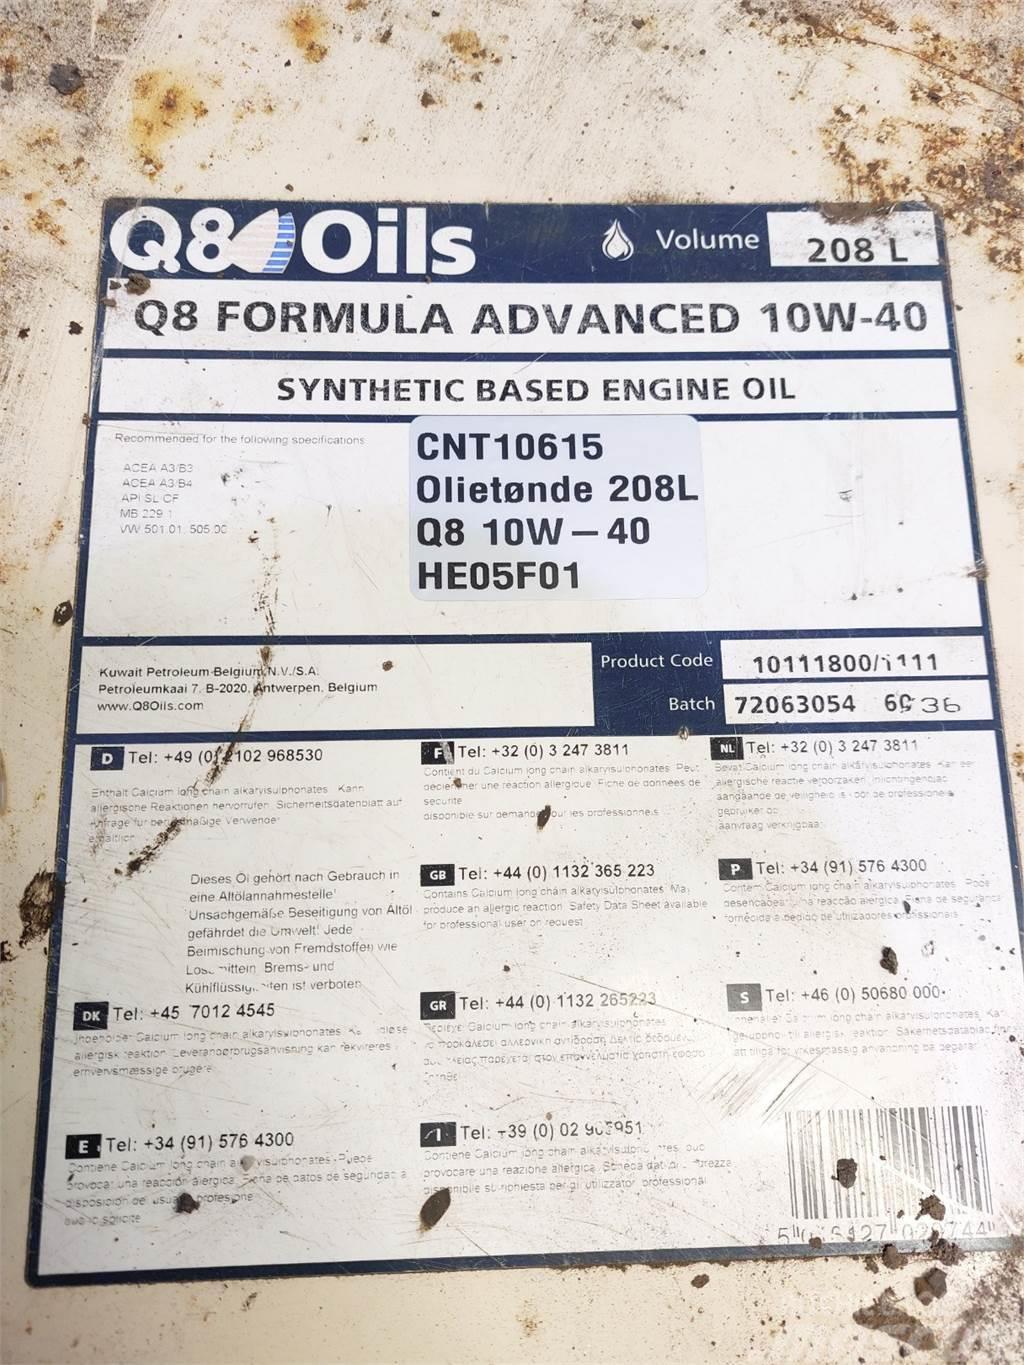  Oiletønde 208L Q8 10W-40 Synthetich Based Iné